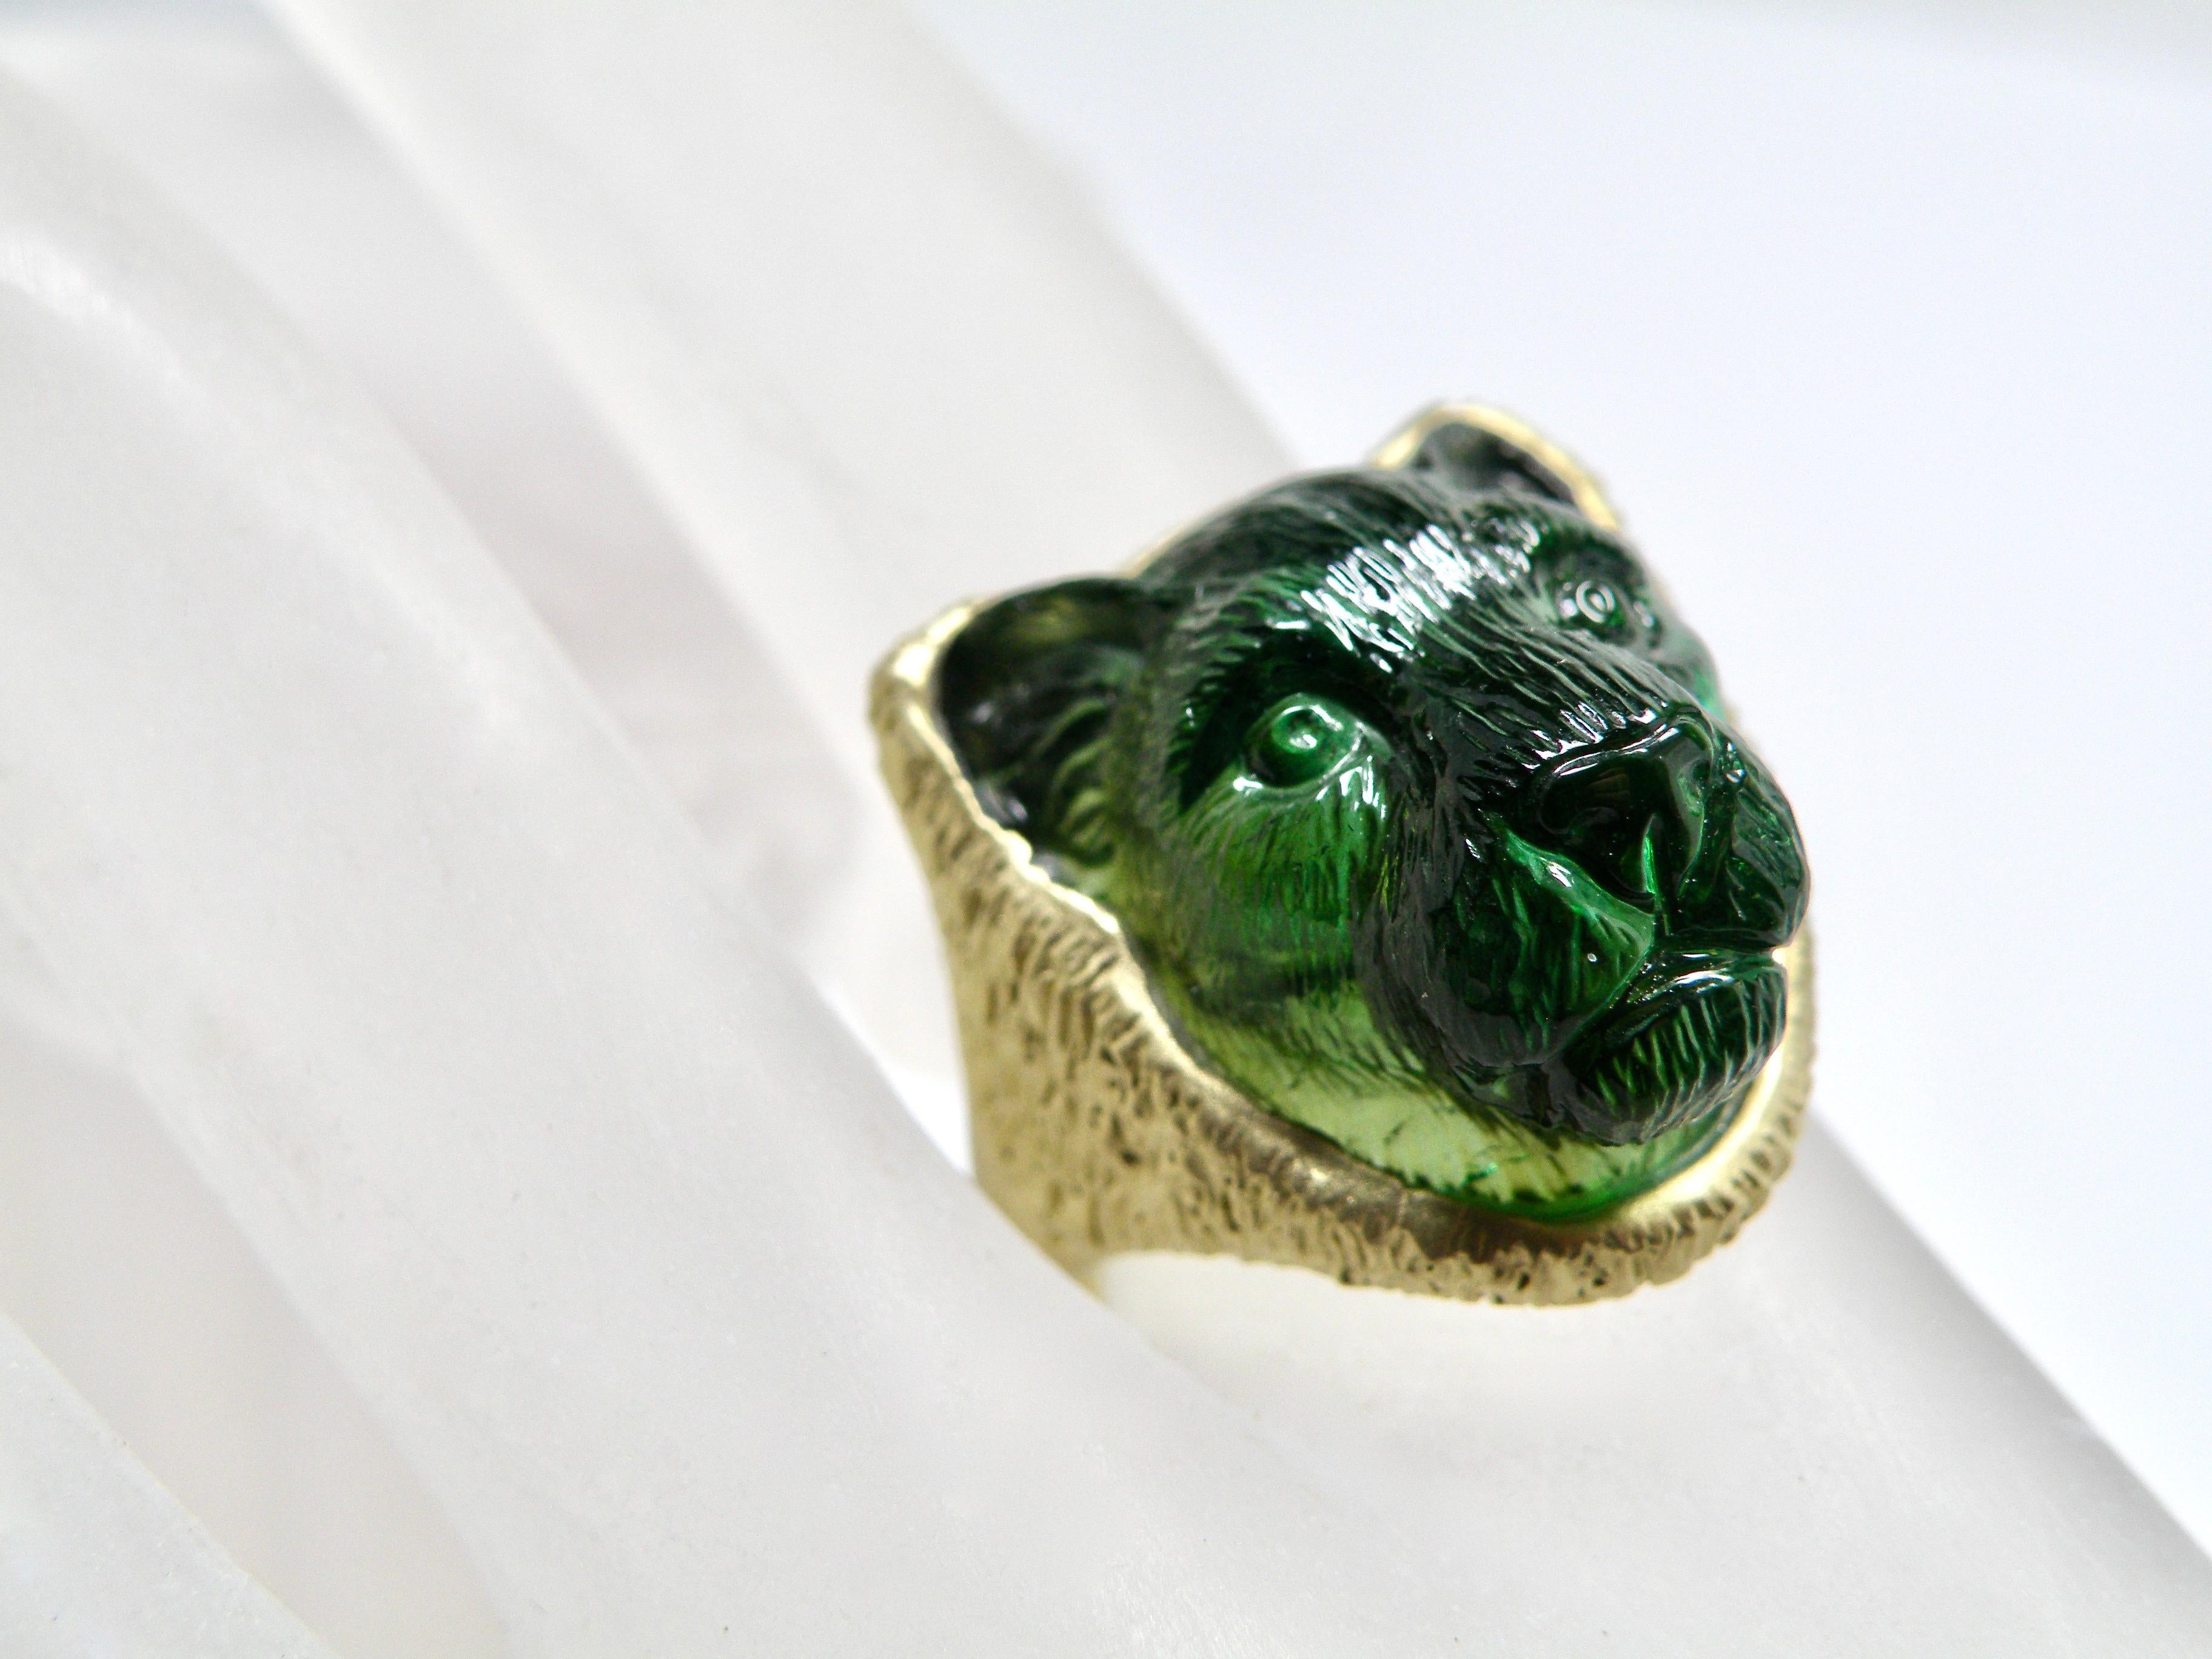 unisex-Ring aus 18 Karat Gold mit grünem Turmalin-Löwenkopf, geschnitzt von Meister Idar Obestein.
stein3/4